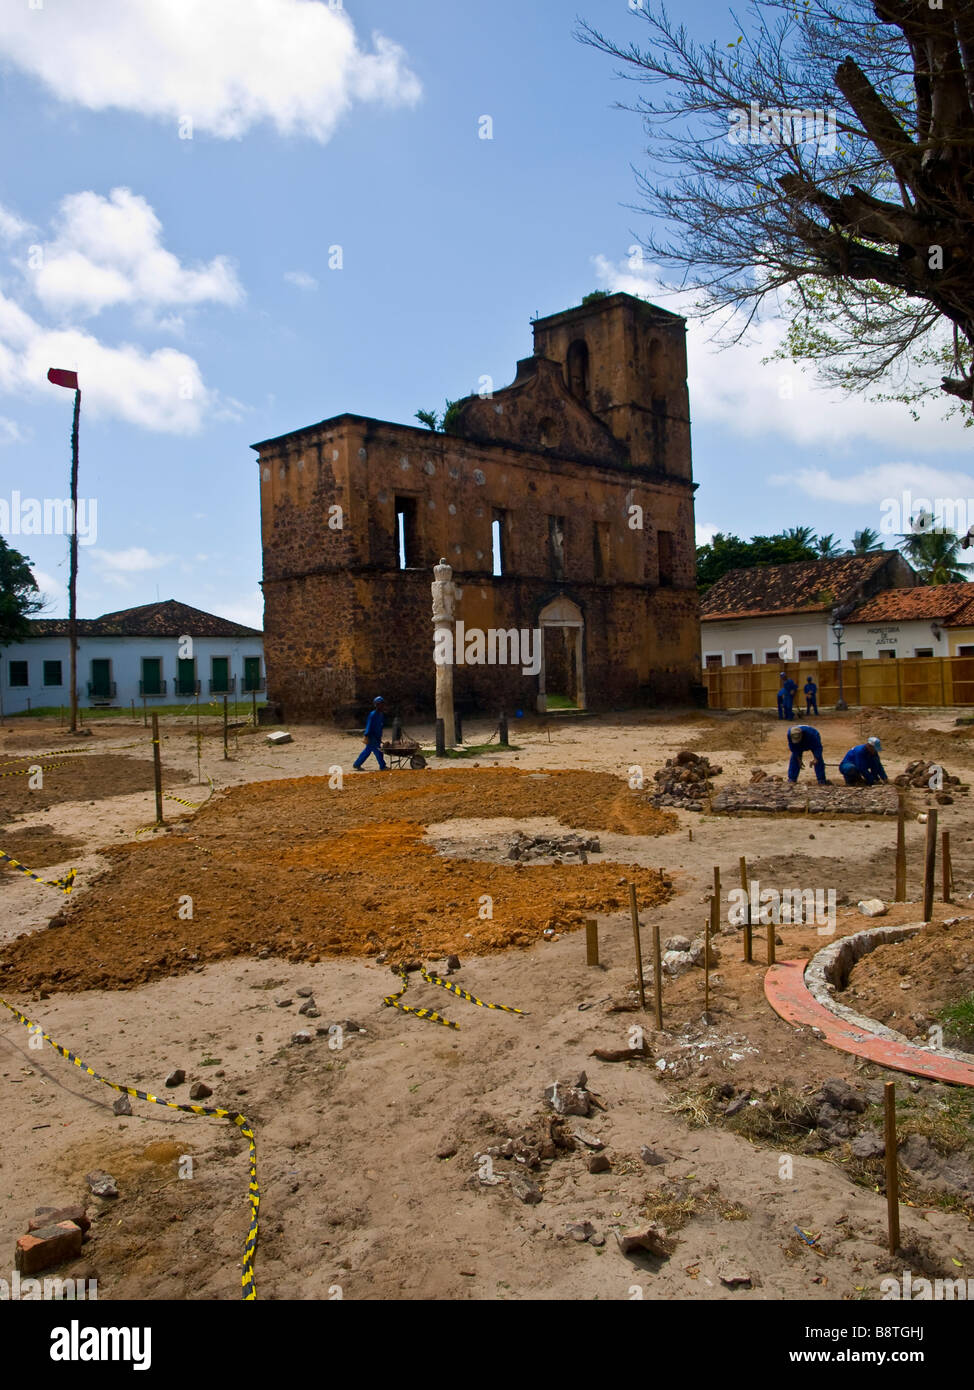 Renovierung von dem Pelourinho whipping Post in der historischen Stadt von Alcântara, Bundesstaat Maranhão, Brasilien Stockfoto